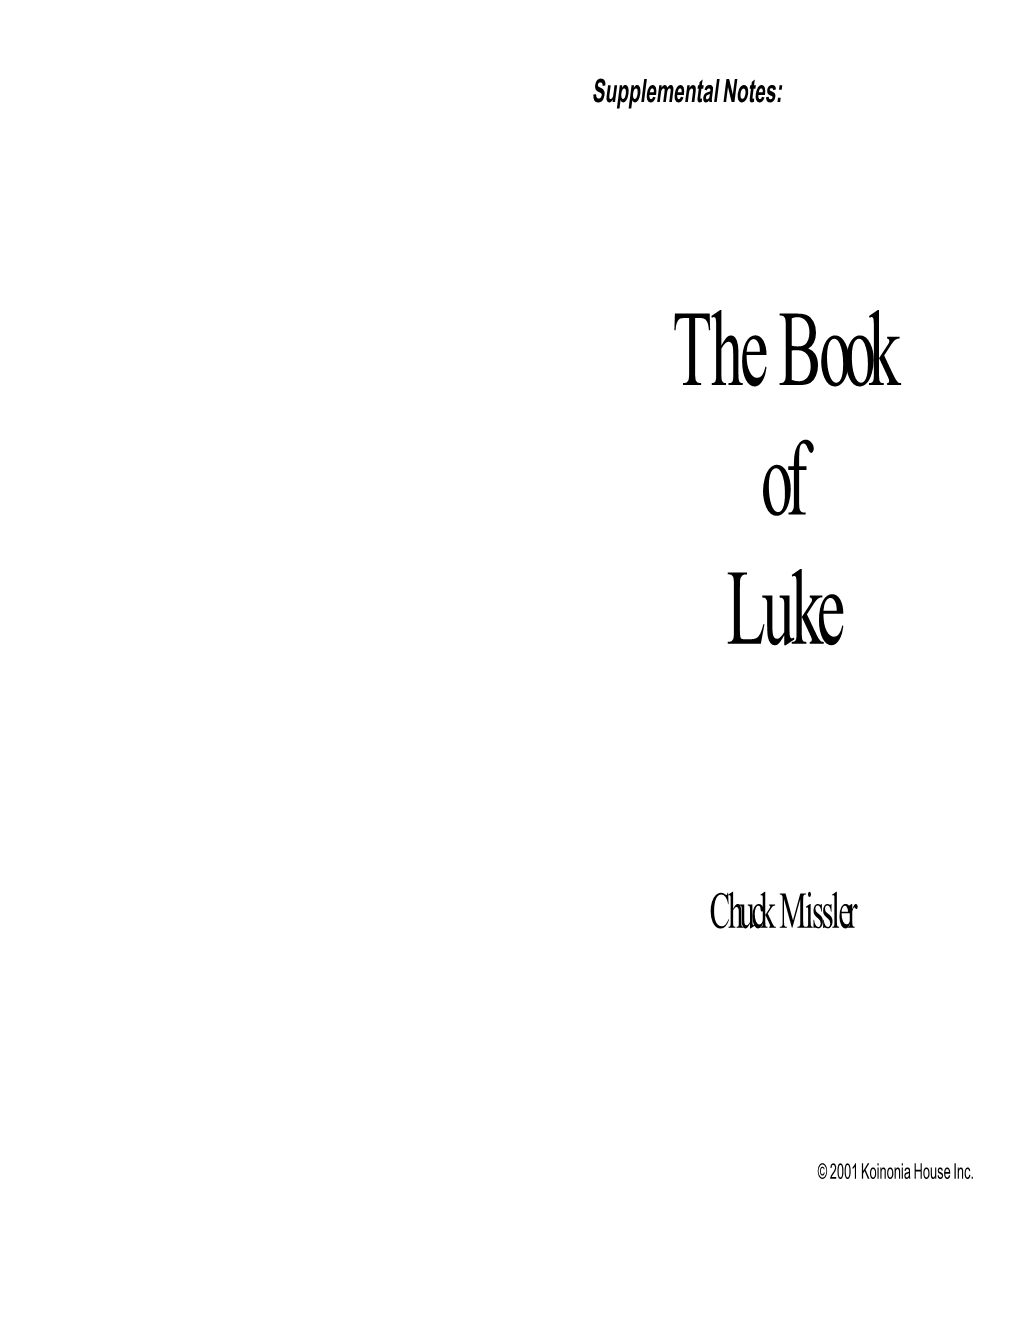 Gospel of Luke